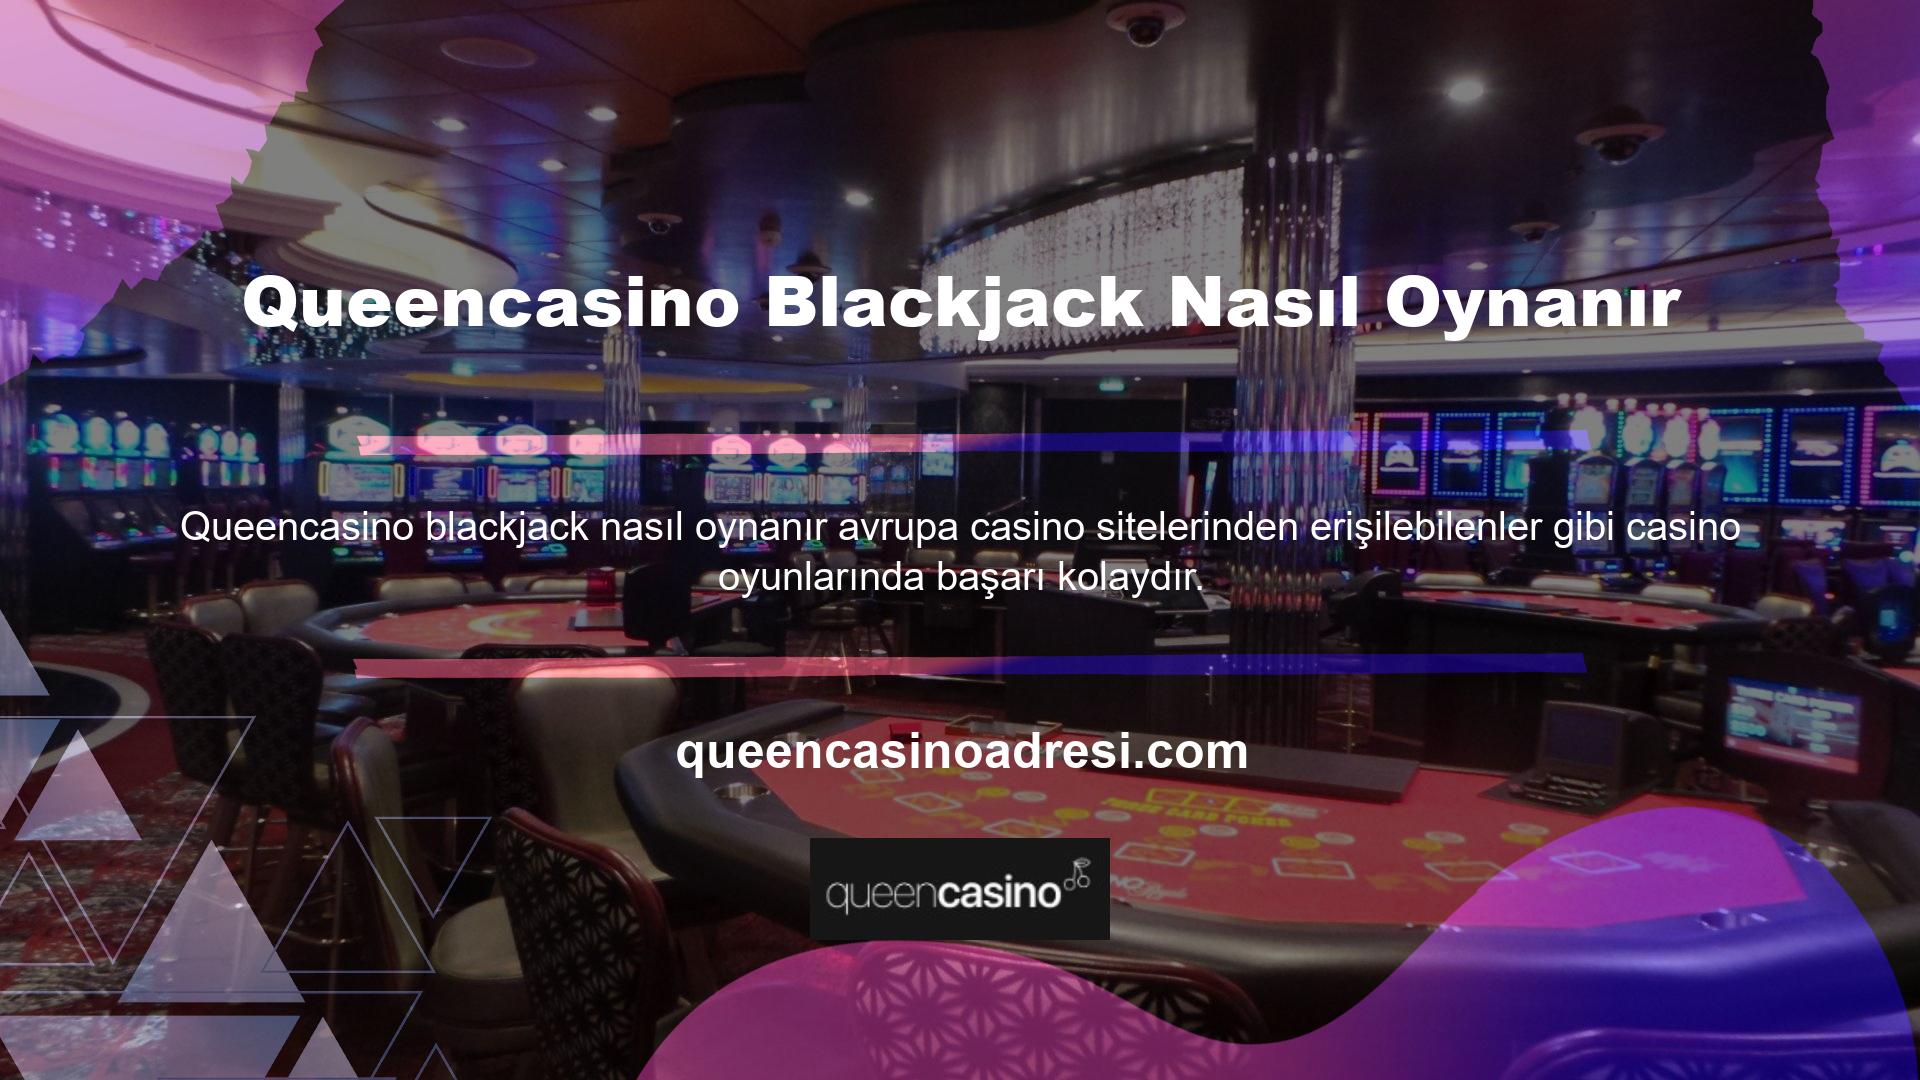 Blackjack masasında sabit sayıda oyuncuya ek olarak bir de krupiye vardır